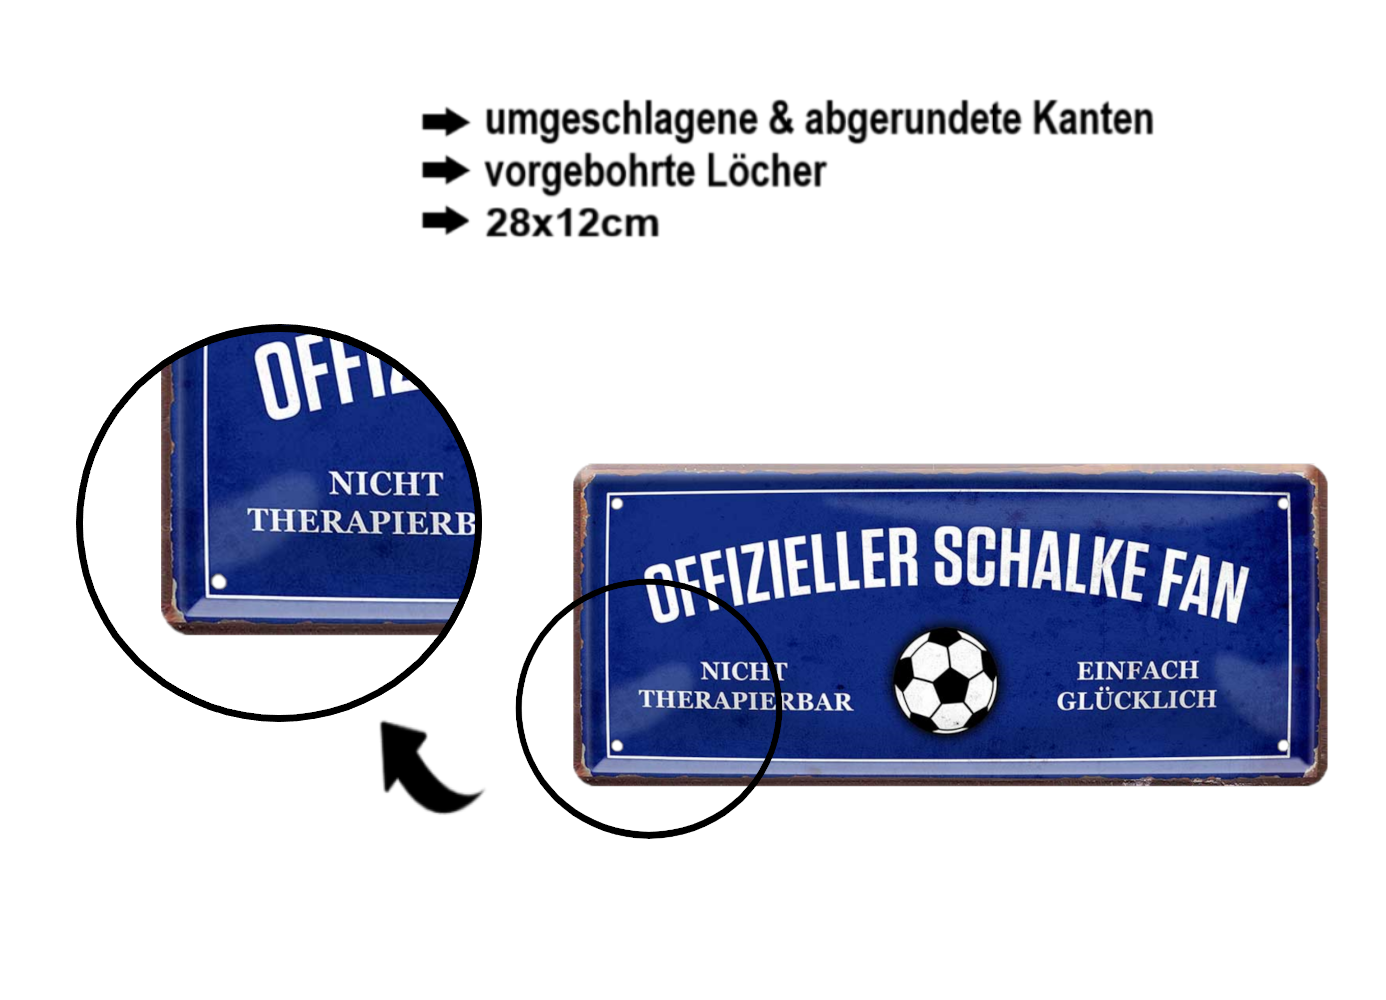 Tin sign "Official Schalke Fan" 28x12cm